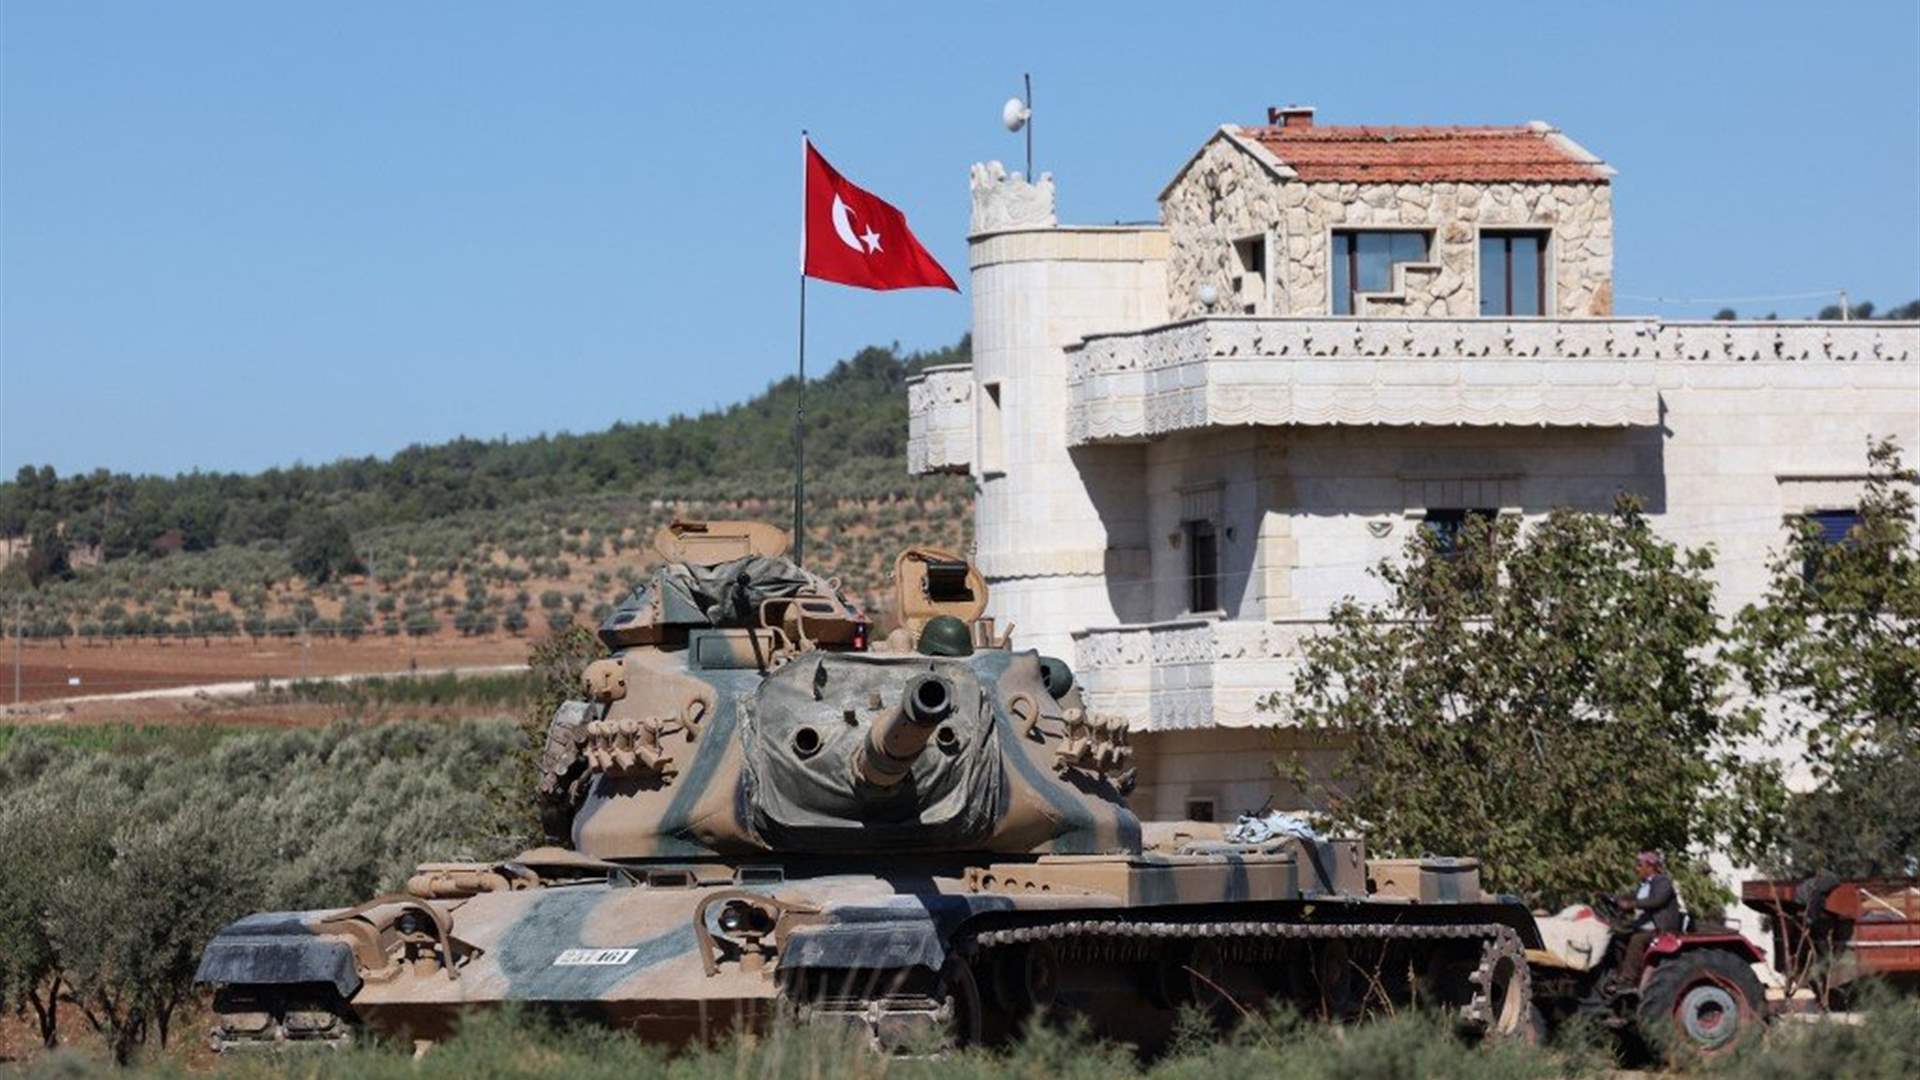 دمشق تشترط انسحاب القوات التركية من أراضيها لتحسين علاقتها مع أنقرة